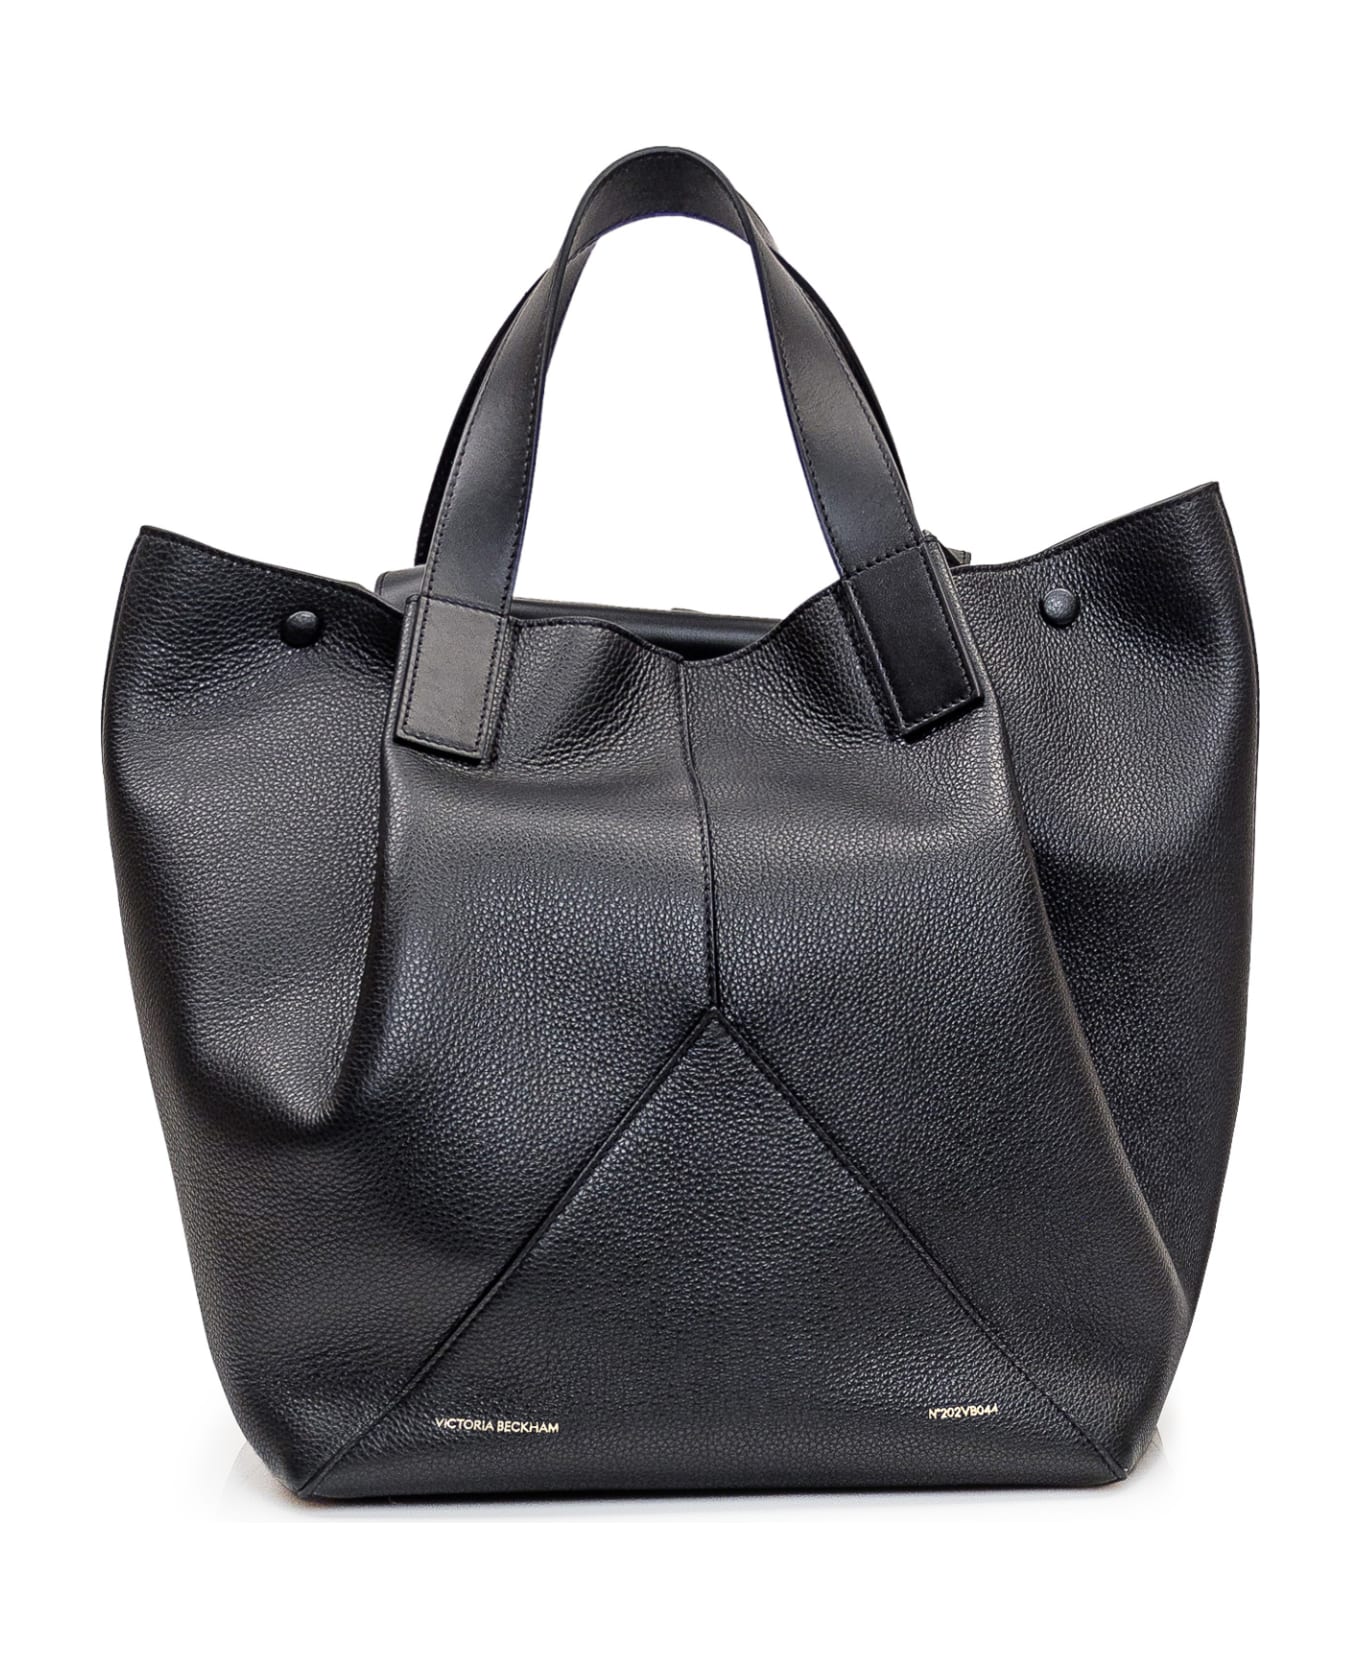 Victoria Beckham Medium Tote Bag - BLACK